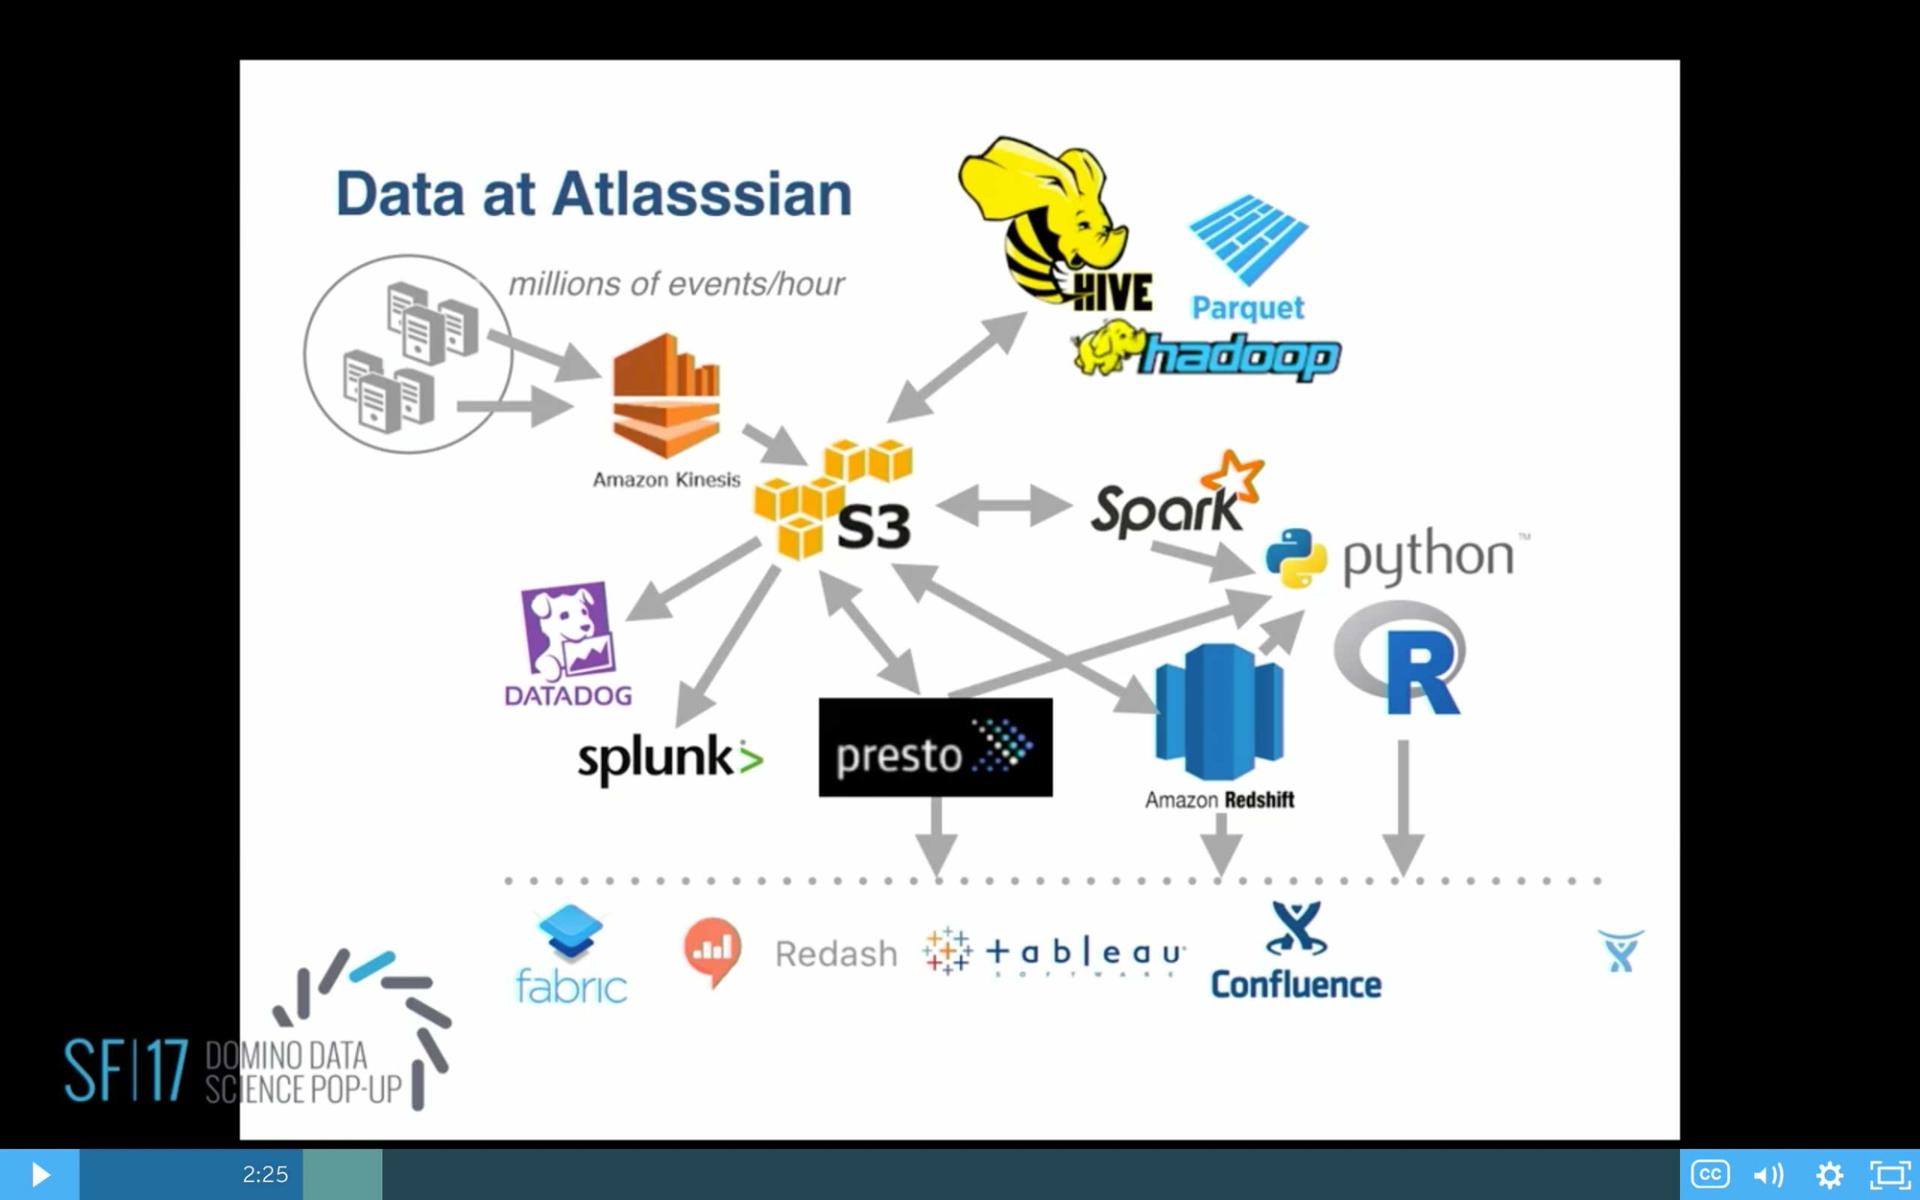 Data at Atlassian